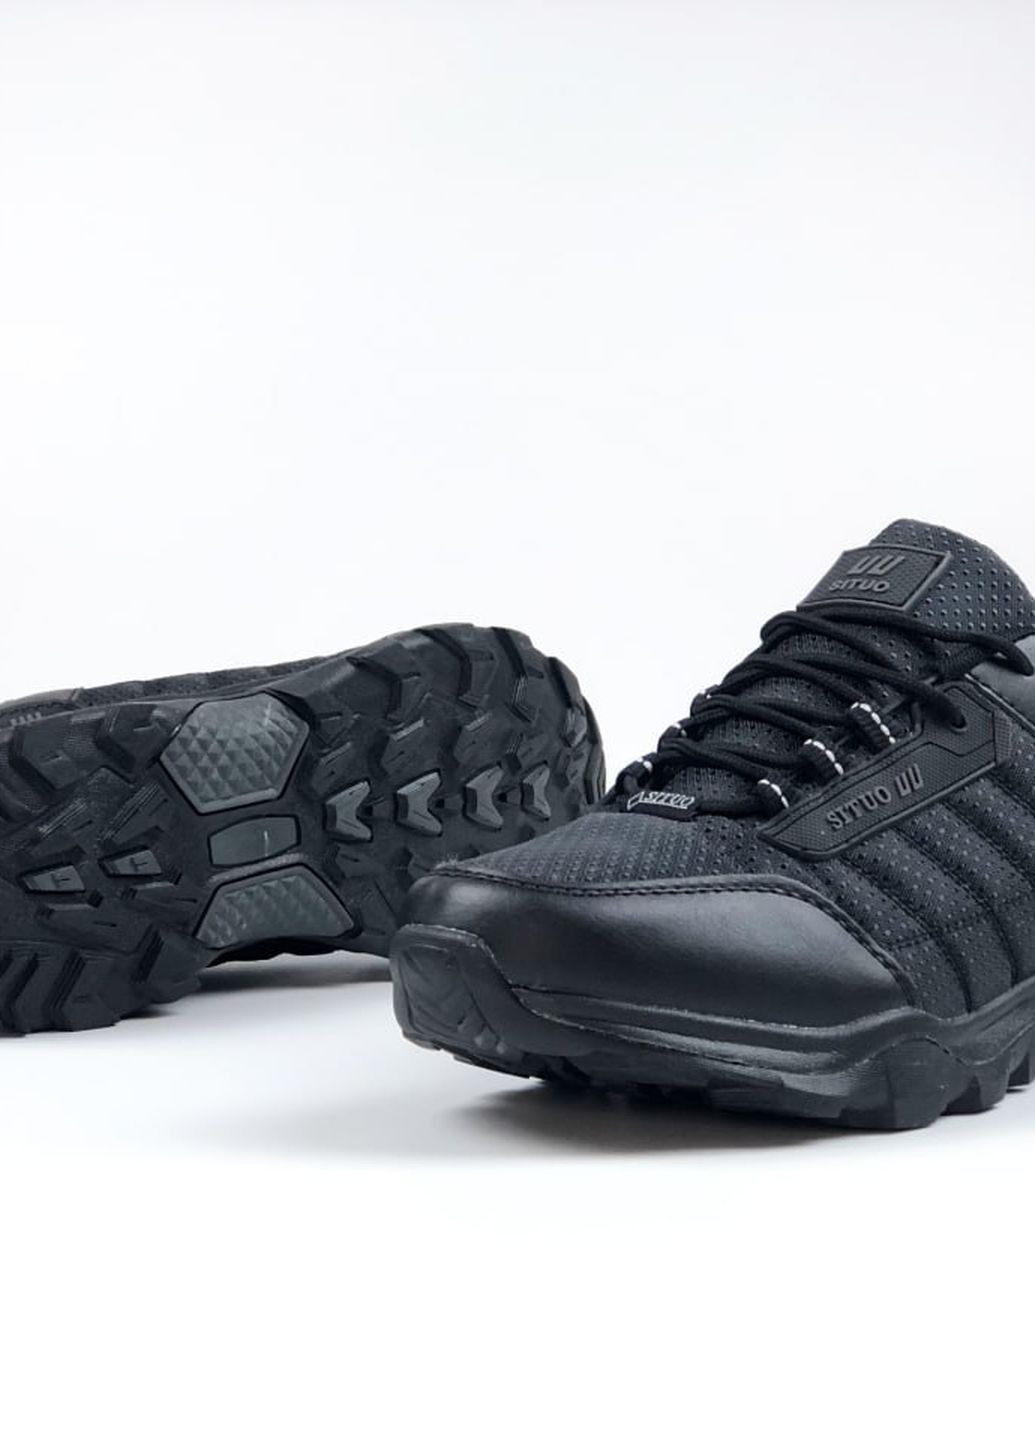 Черные демисезонные кроссовки мужские, вьетнам Situo All Black